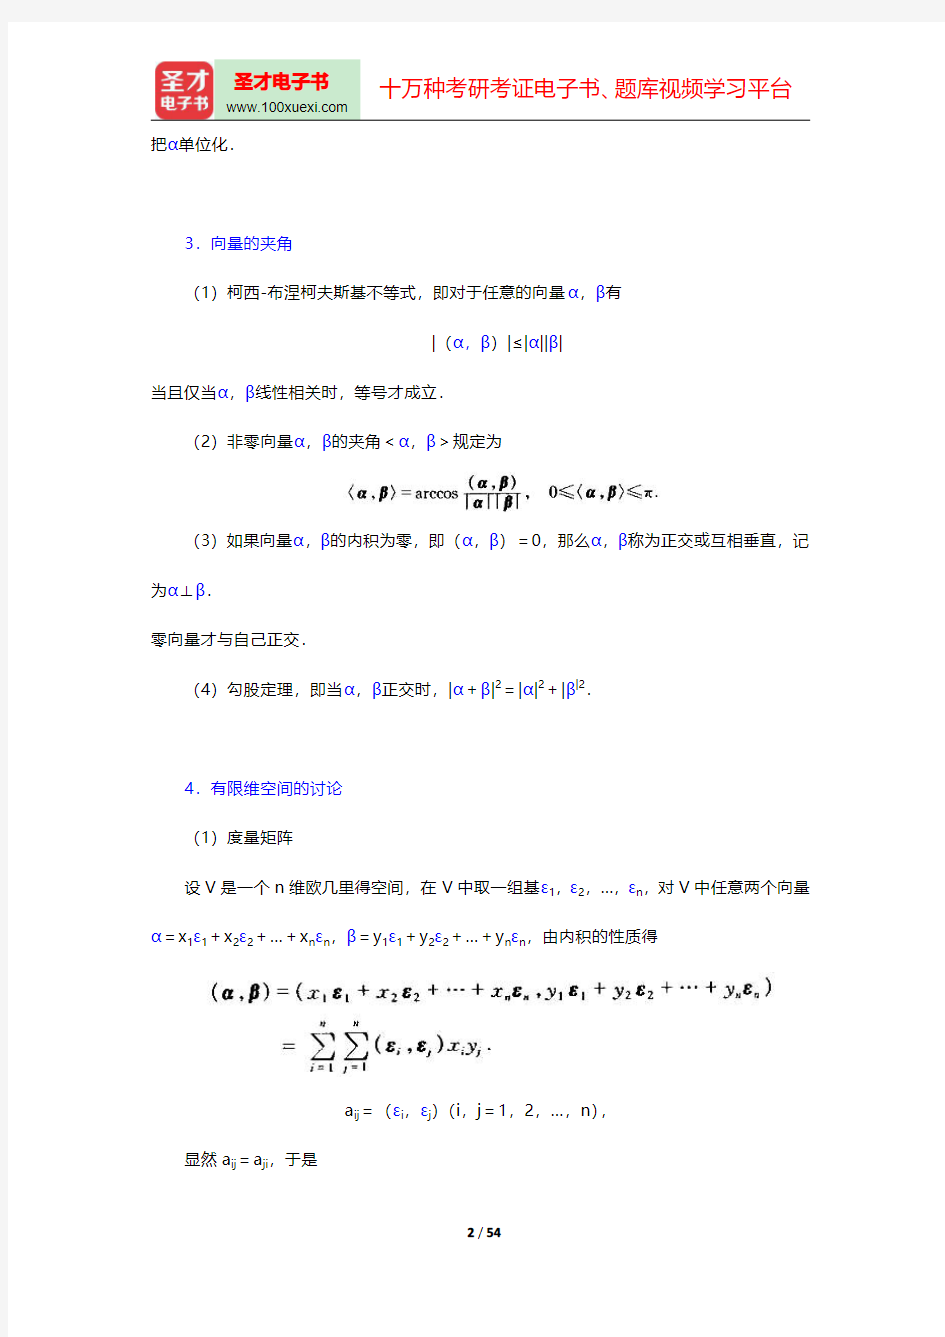 北京大学数学系《高等代数》(第3版)(欧几里得空间)笔记和课后习题(含考研真题)详解【圣才出品】